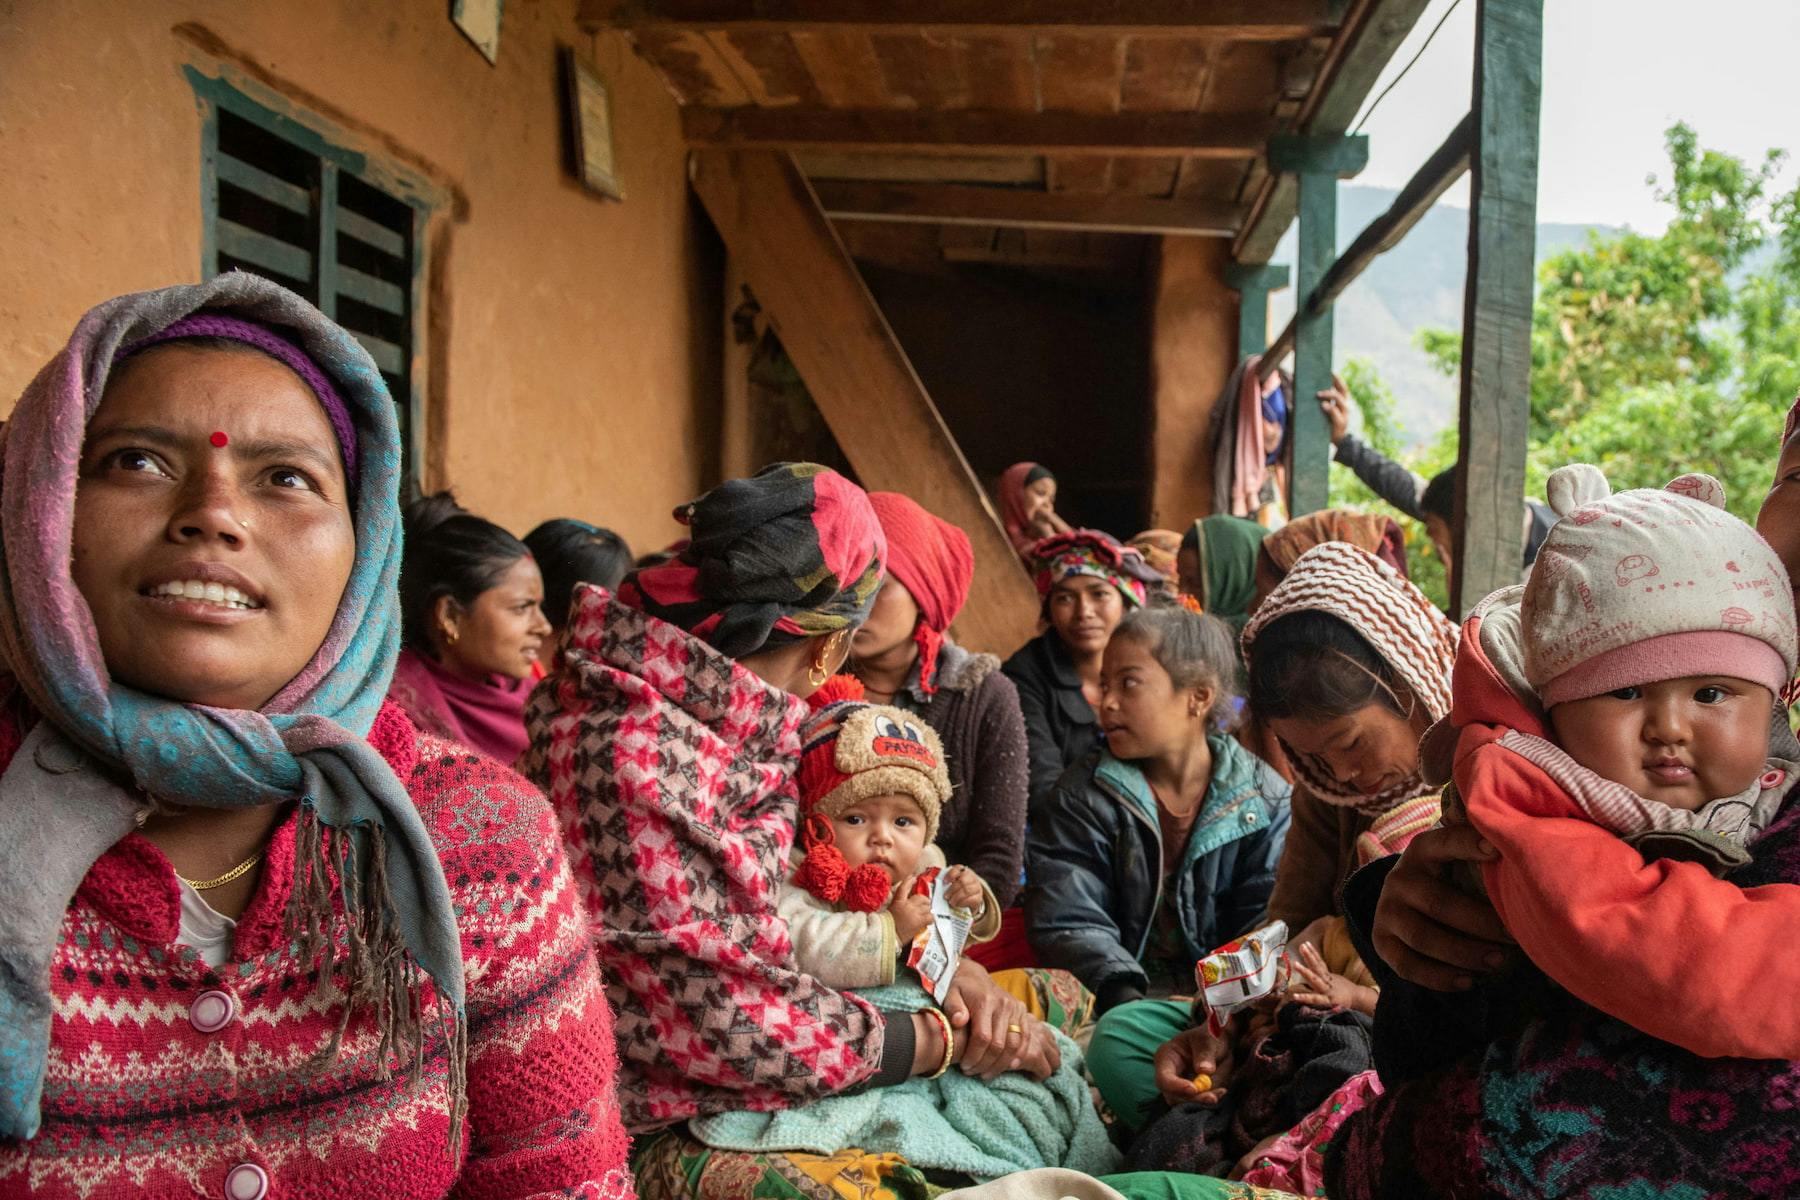 Sur la photo, on voit des mères et leurs enfants au Népal. Elles sont assises sous un toit, serrées les unes contre les autres. Elles sont habillées de manière hivernale et colorée.